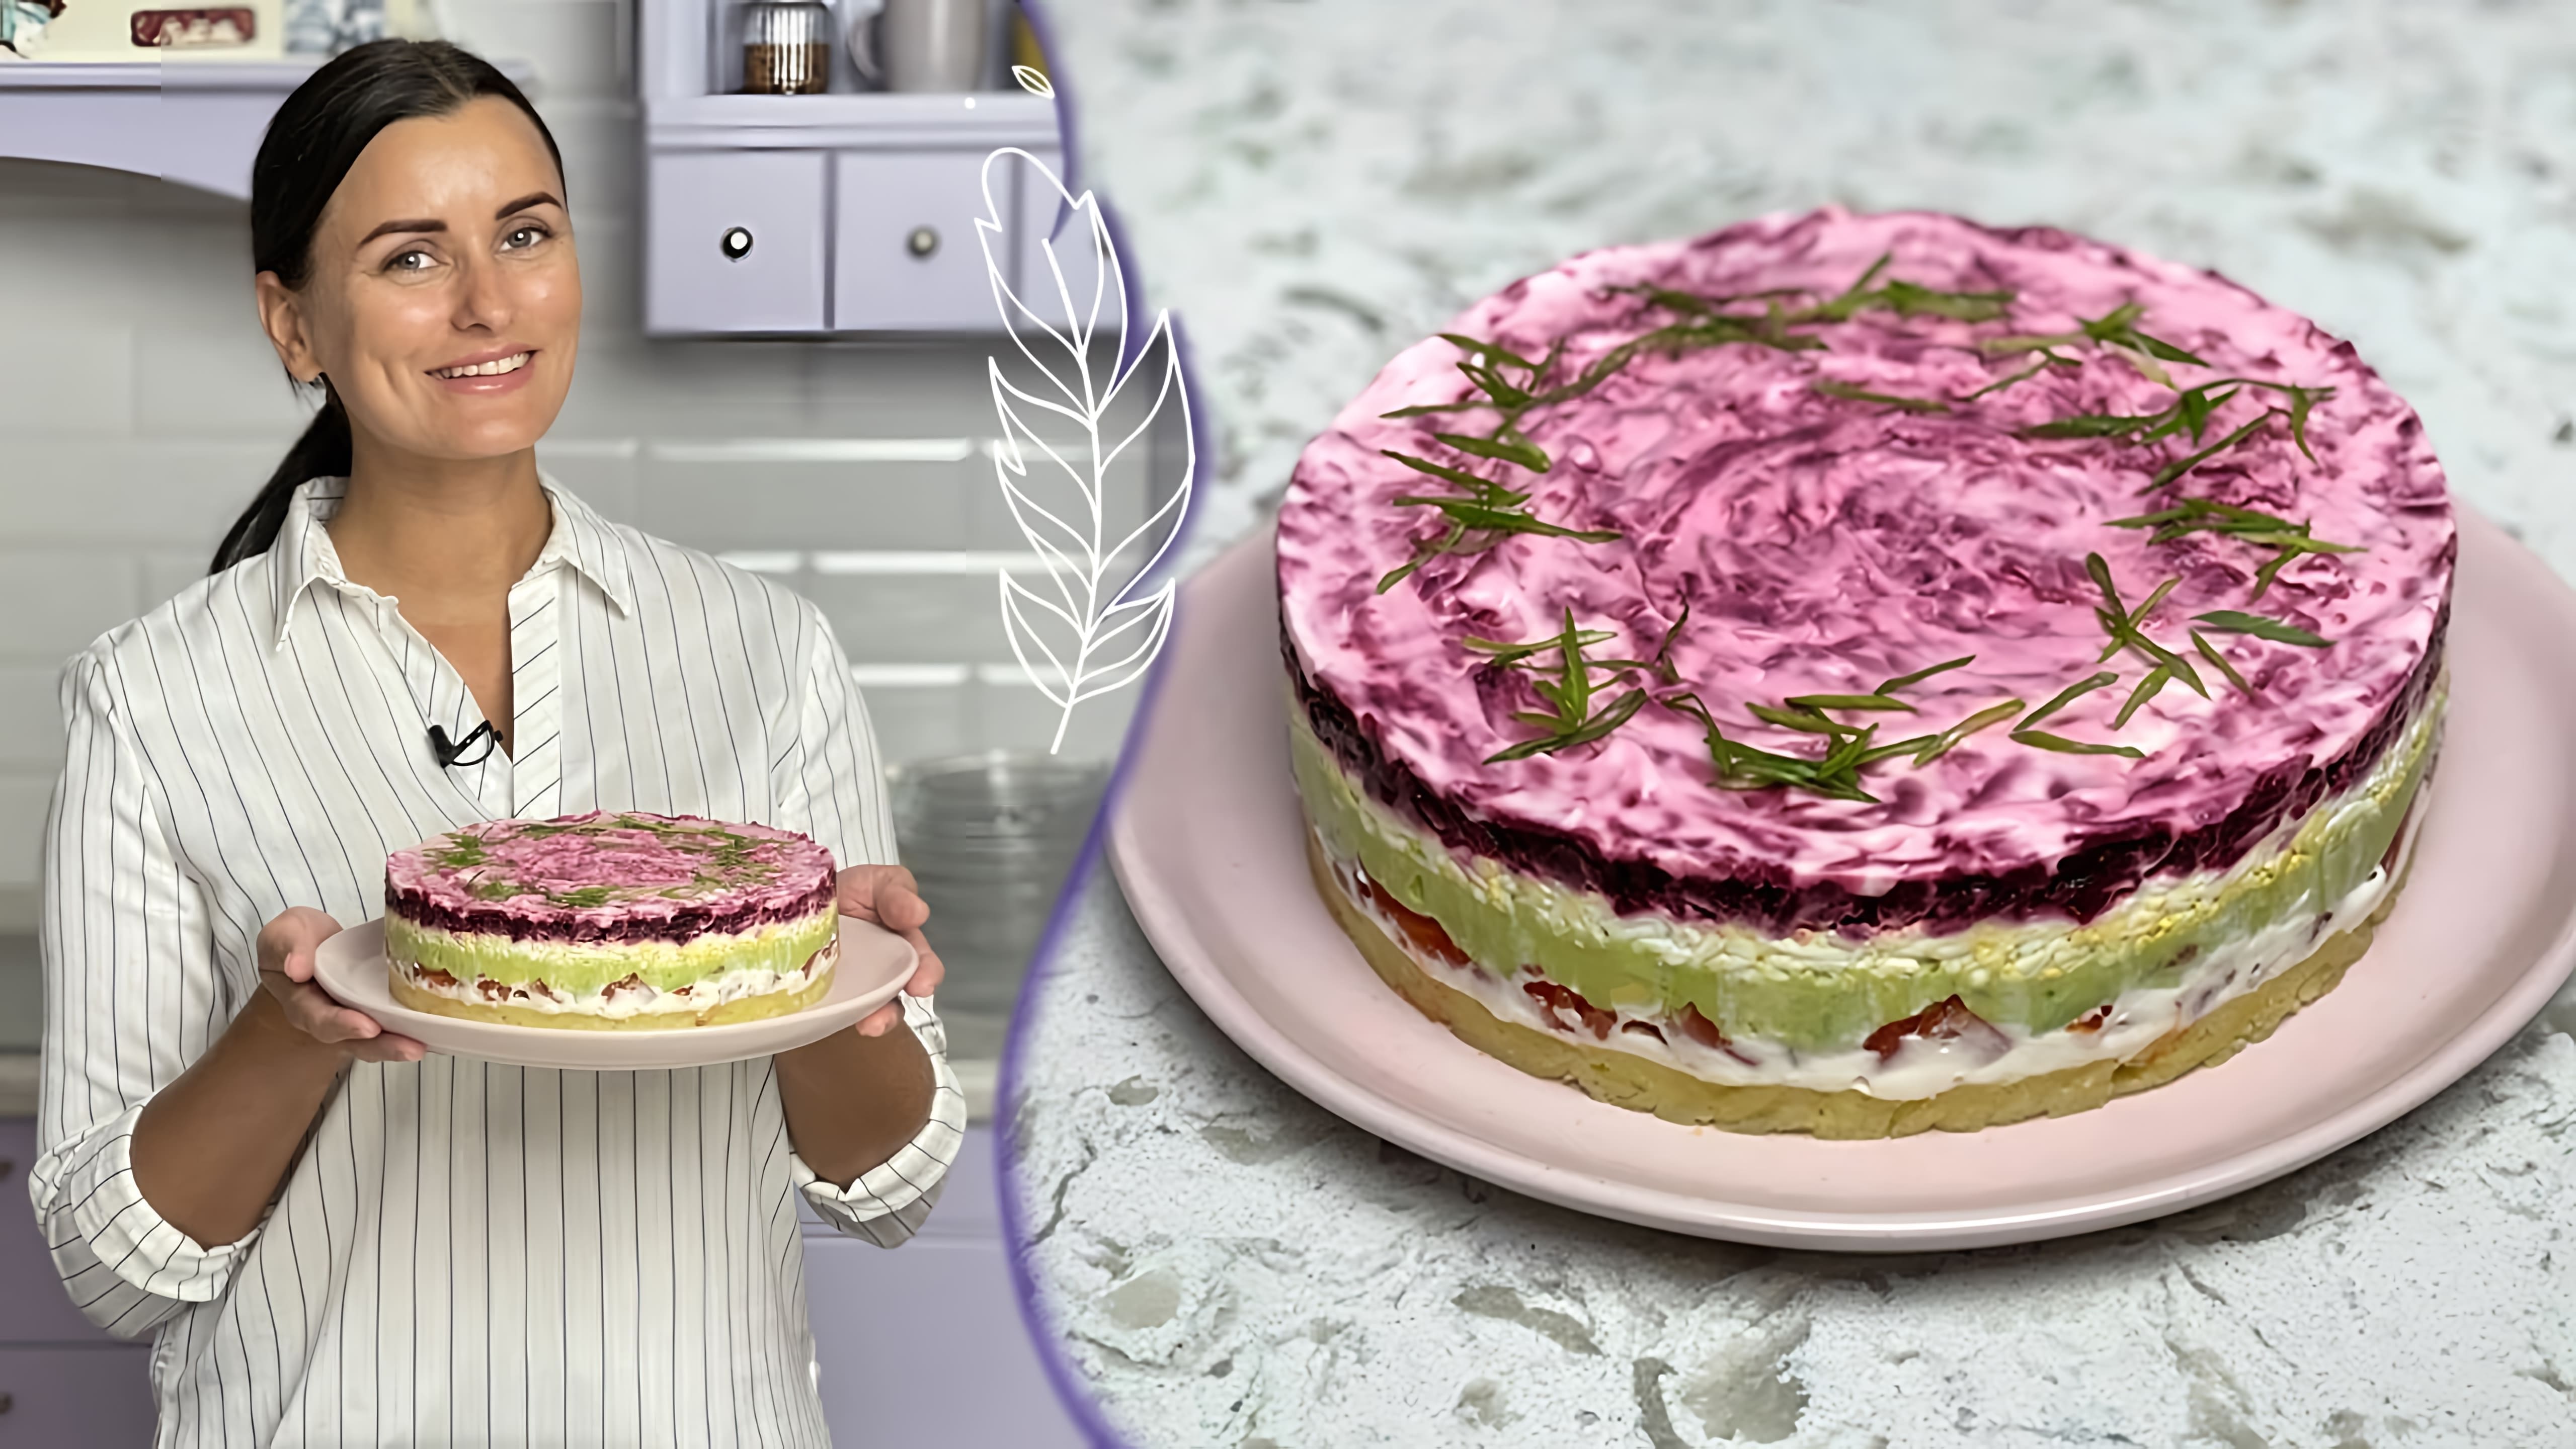 В этом видео Лиза Глинская показывает, как приготовить праздничный торт "Селёдка под ШУБОЙ" с авокадо и слабосоленой рыбой